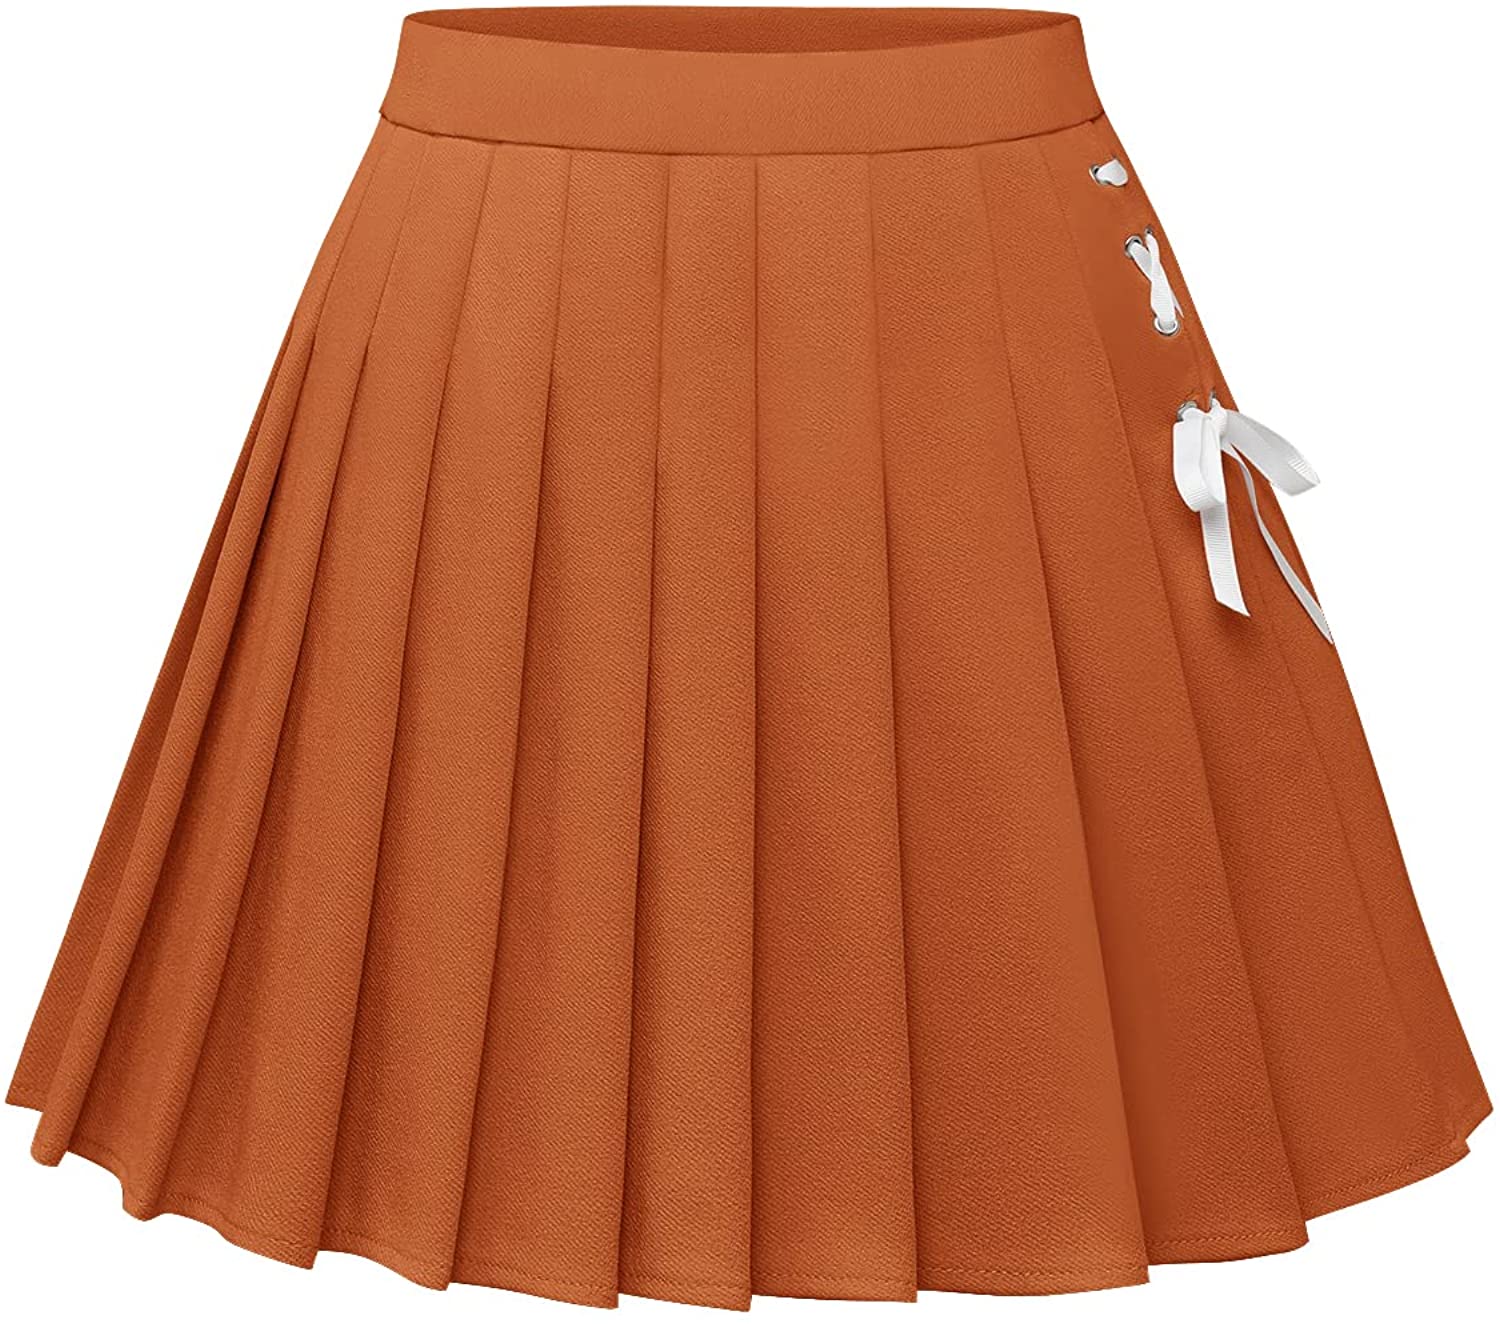 Dressystar Basic Skirt for Women Stretchy Skater A-Line Cheerleader Pleated Mini Skirt 